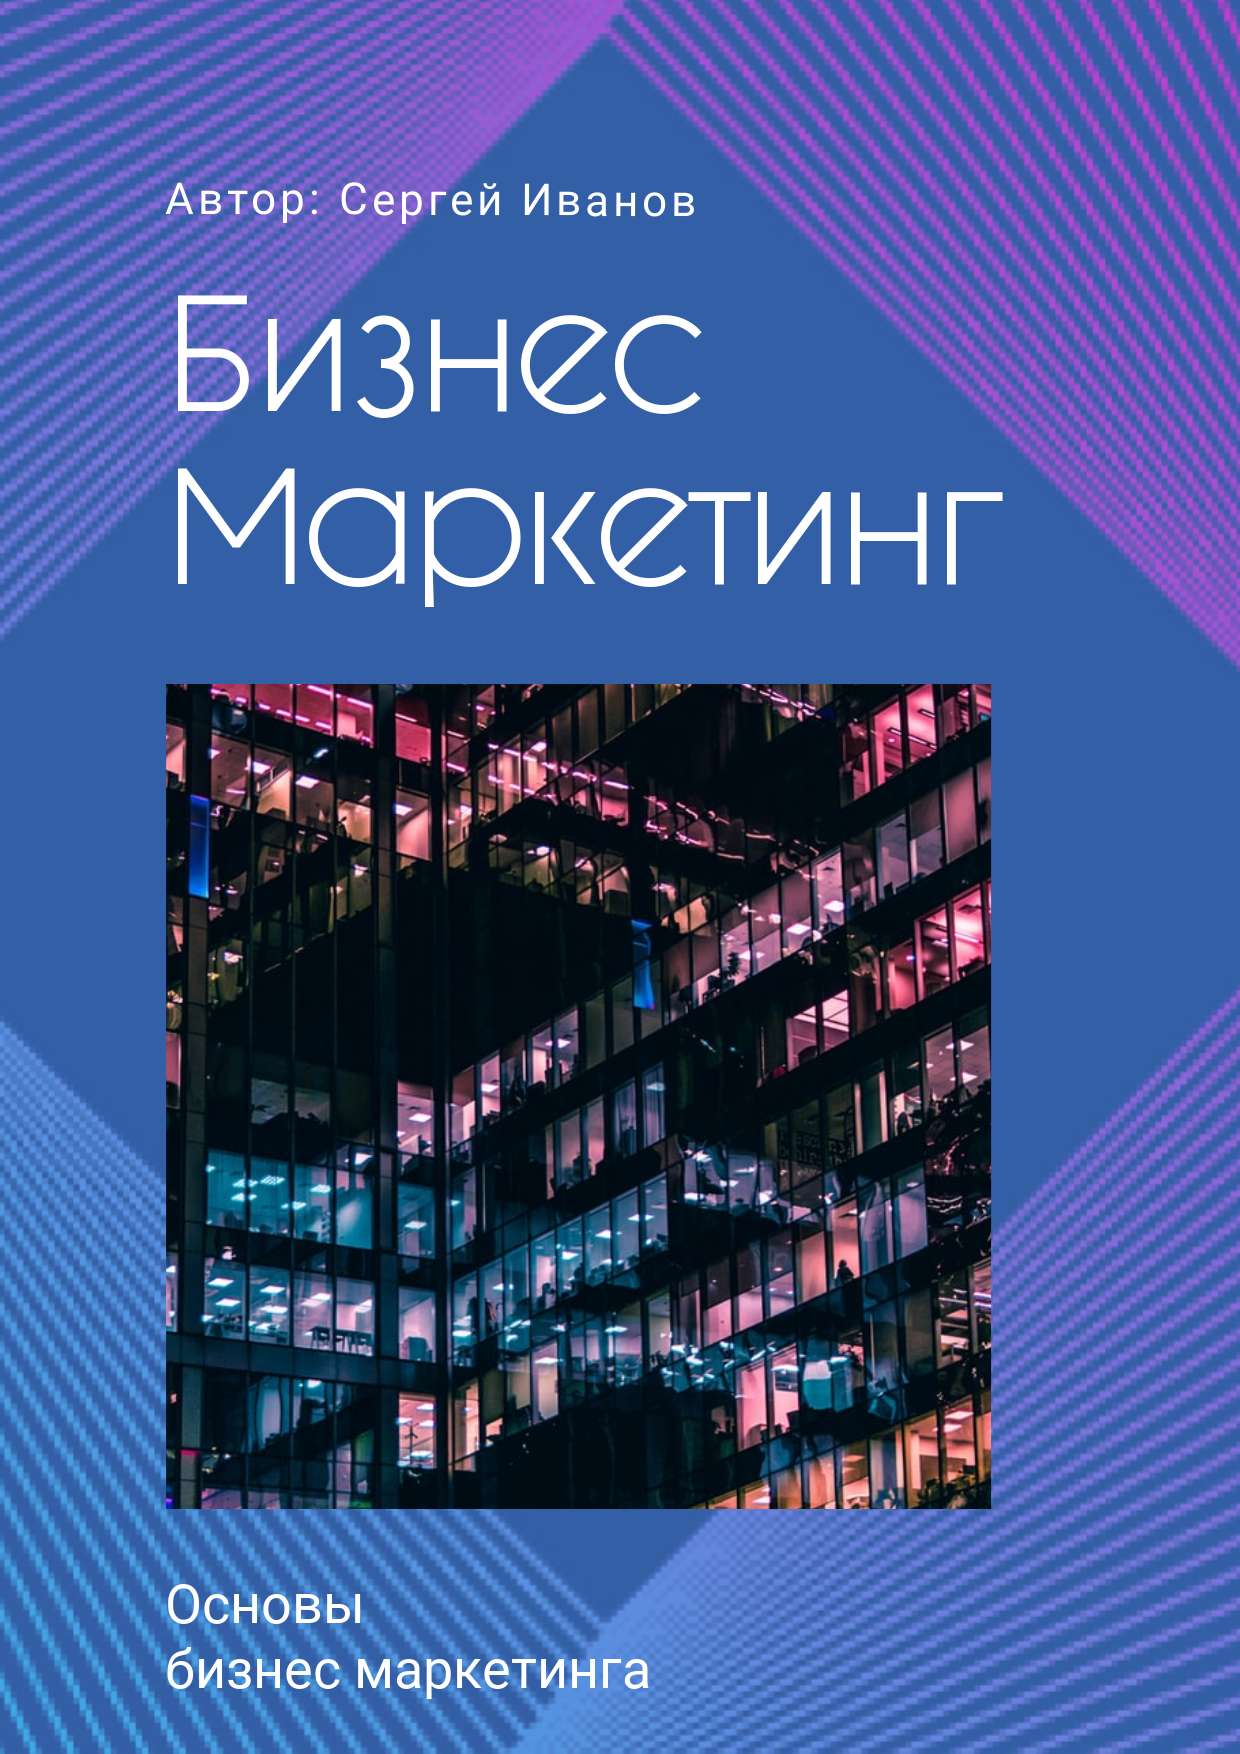 Яркая синяя обложка для презентации на тему маркетинга с неоновыми розовыми линиями по периметру